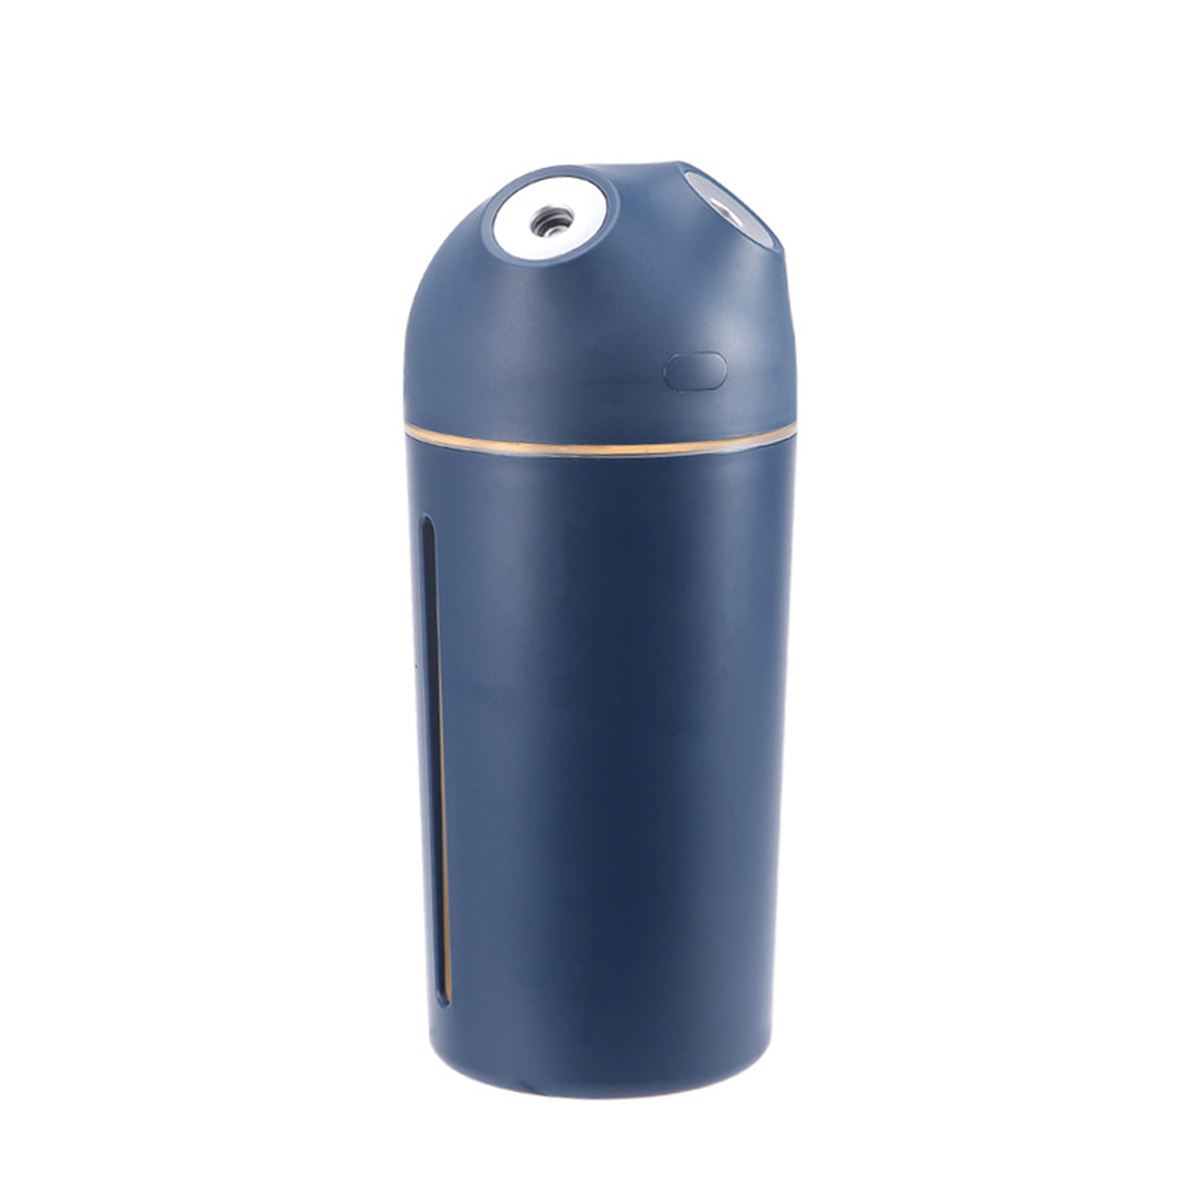 SHAOKE USB-Aroma-Diffuser 10 Blau m²) 2200mAh Luftbefeuchter Doppelnebelmodus Nachtlicht Kapazität (Raumgröße: 470ml mit und